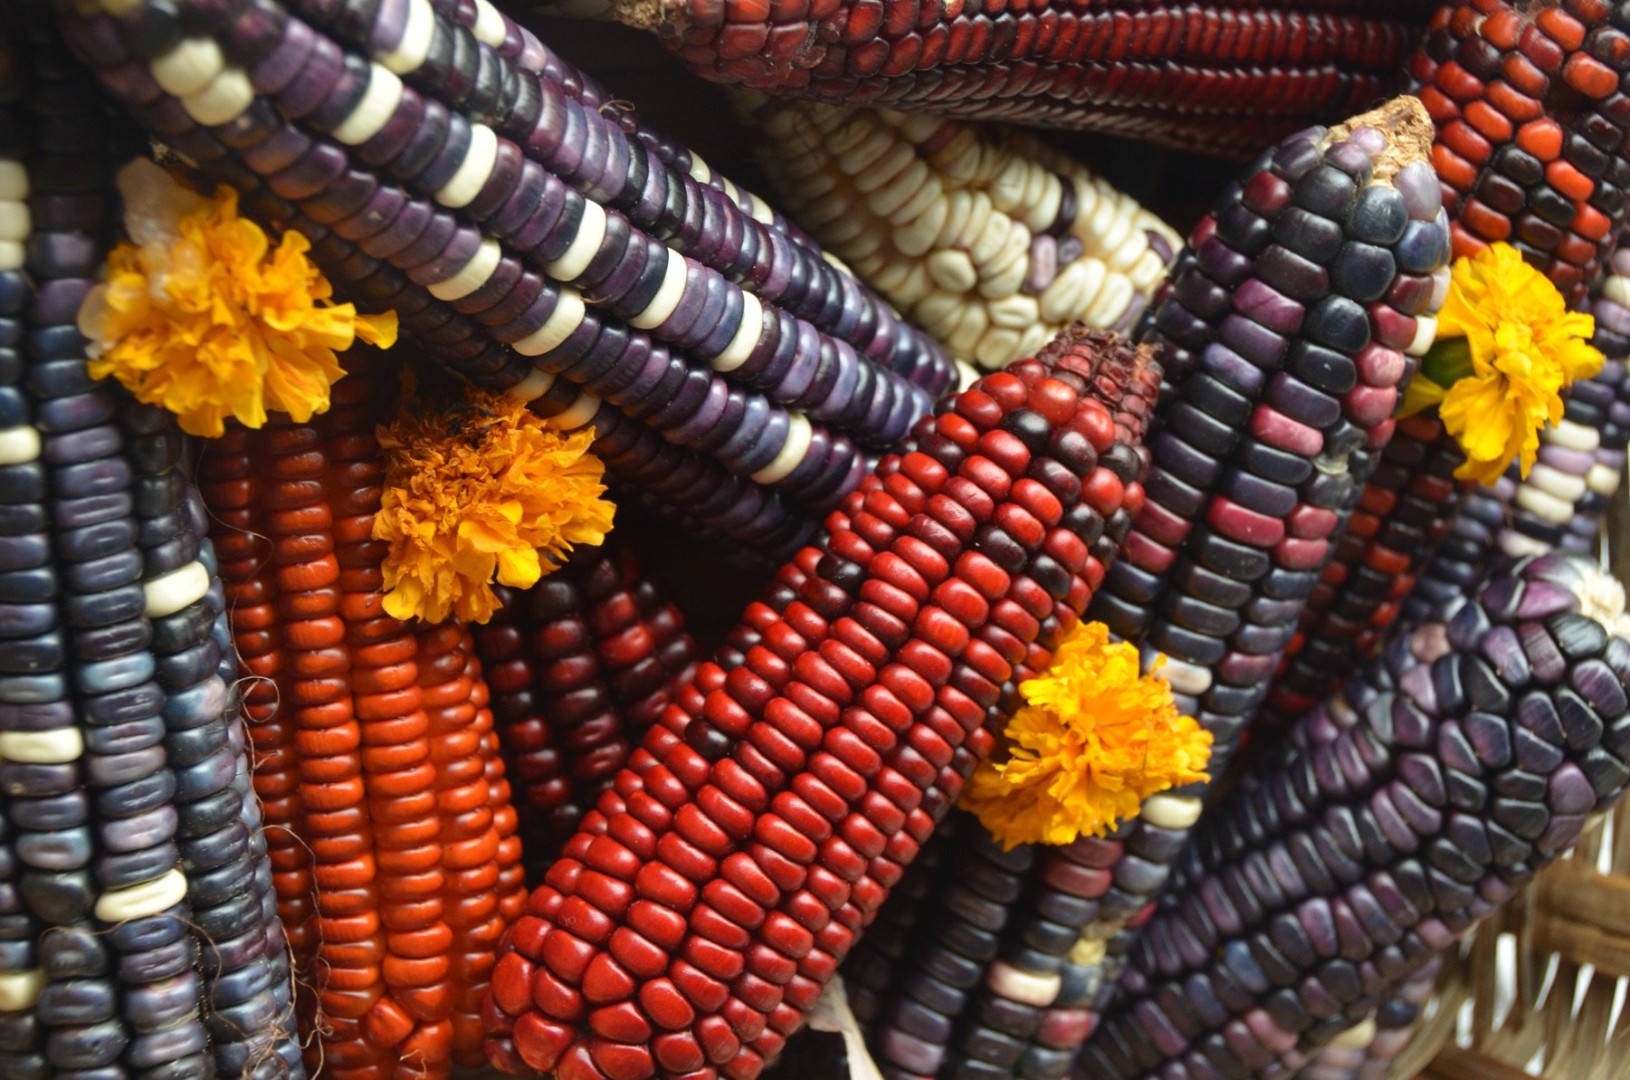 29 сентября – День маиса, который бывает здесь разноцветным. Поэтому предположение наших туристов, что куры в Мексике желтые, так как едят кукурузу, может быть неверным